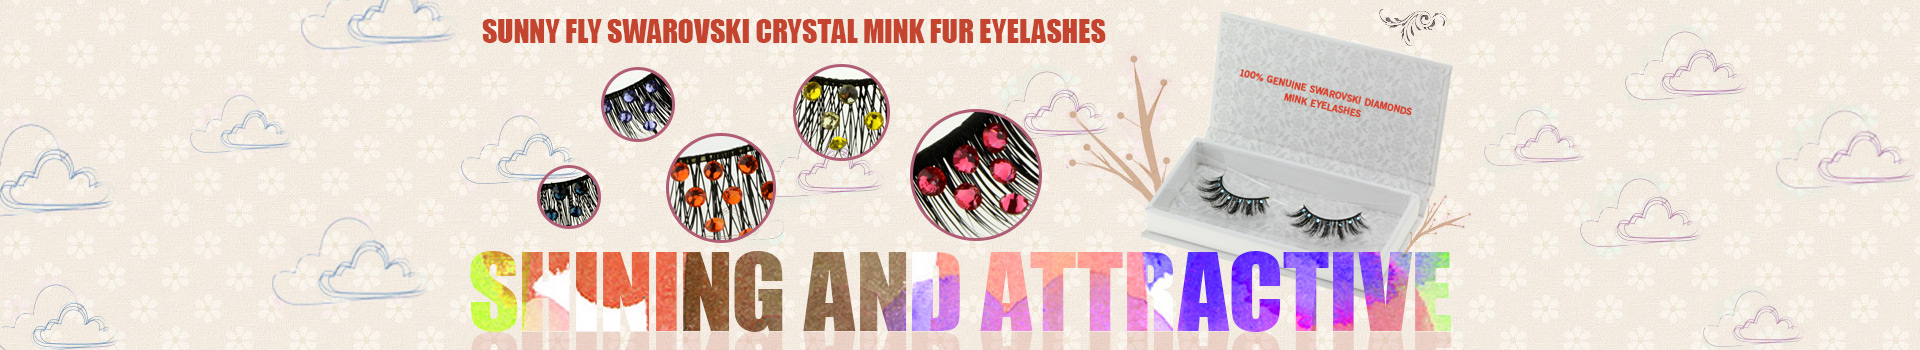 Swarovski Crystal Mink Fur Eyelashes MS09